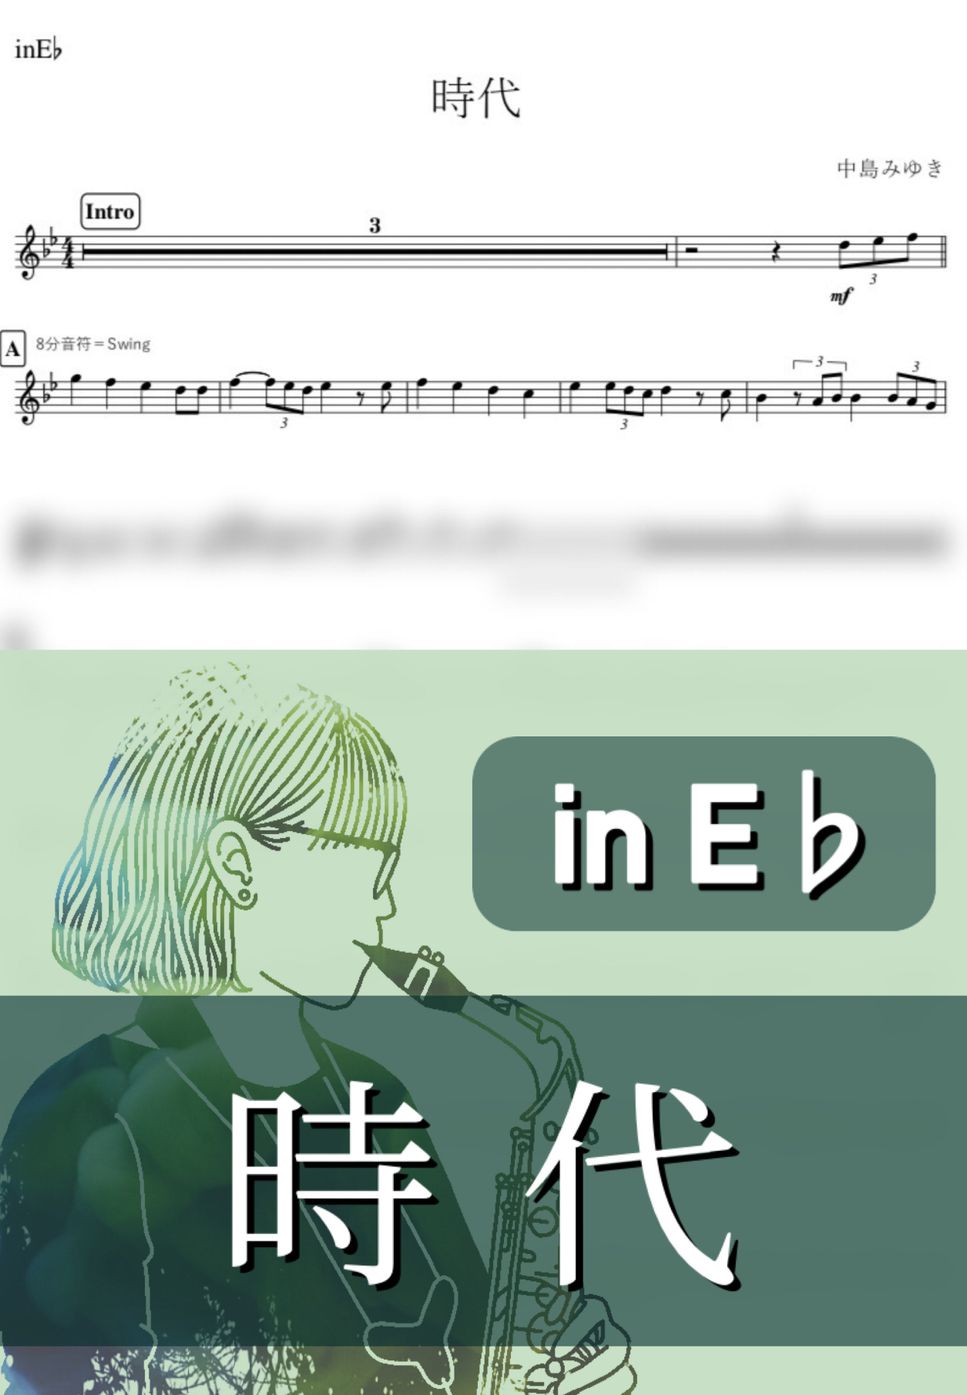 中島みゆき - 時代 (E♭) by kanamusic